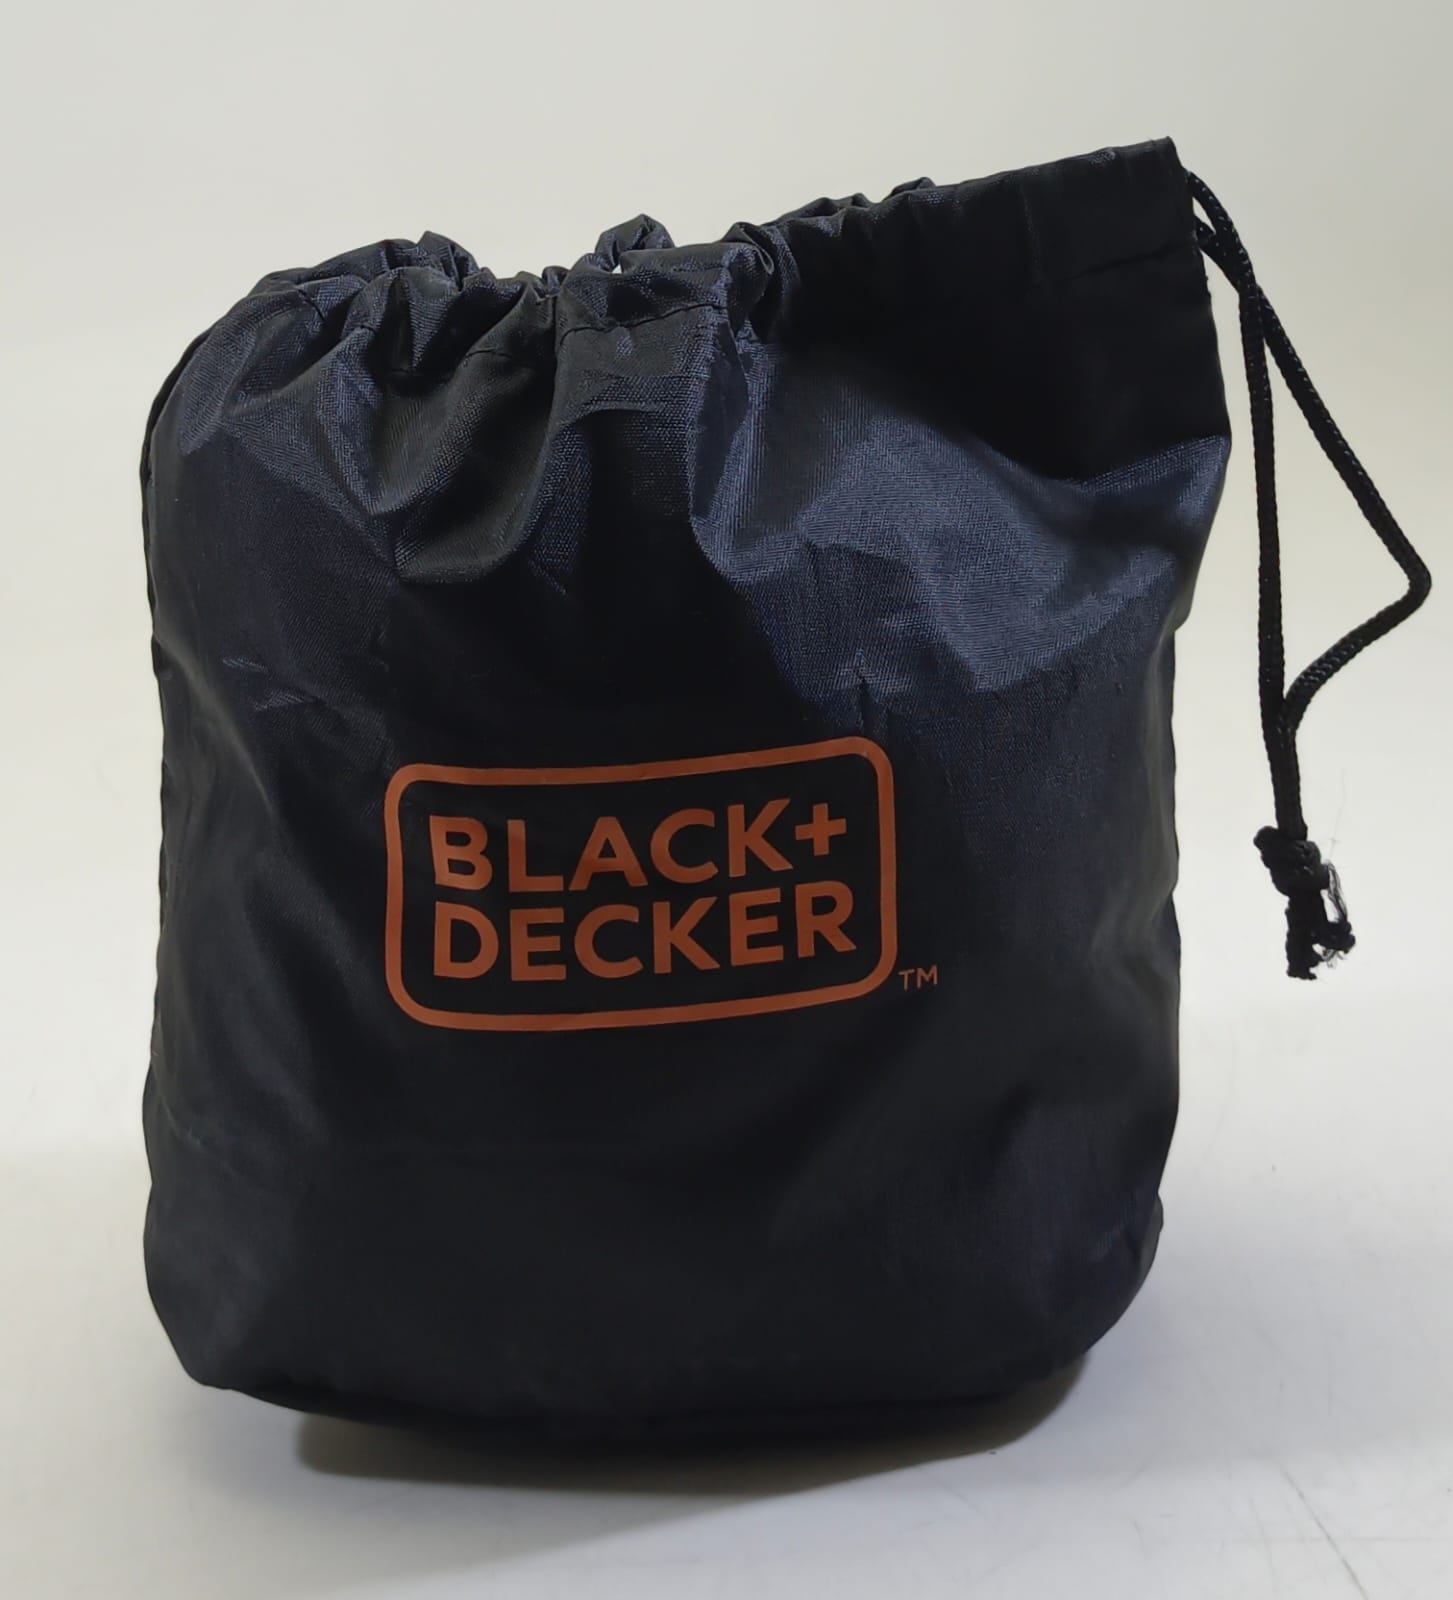 Black Decker Pouch